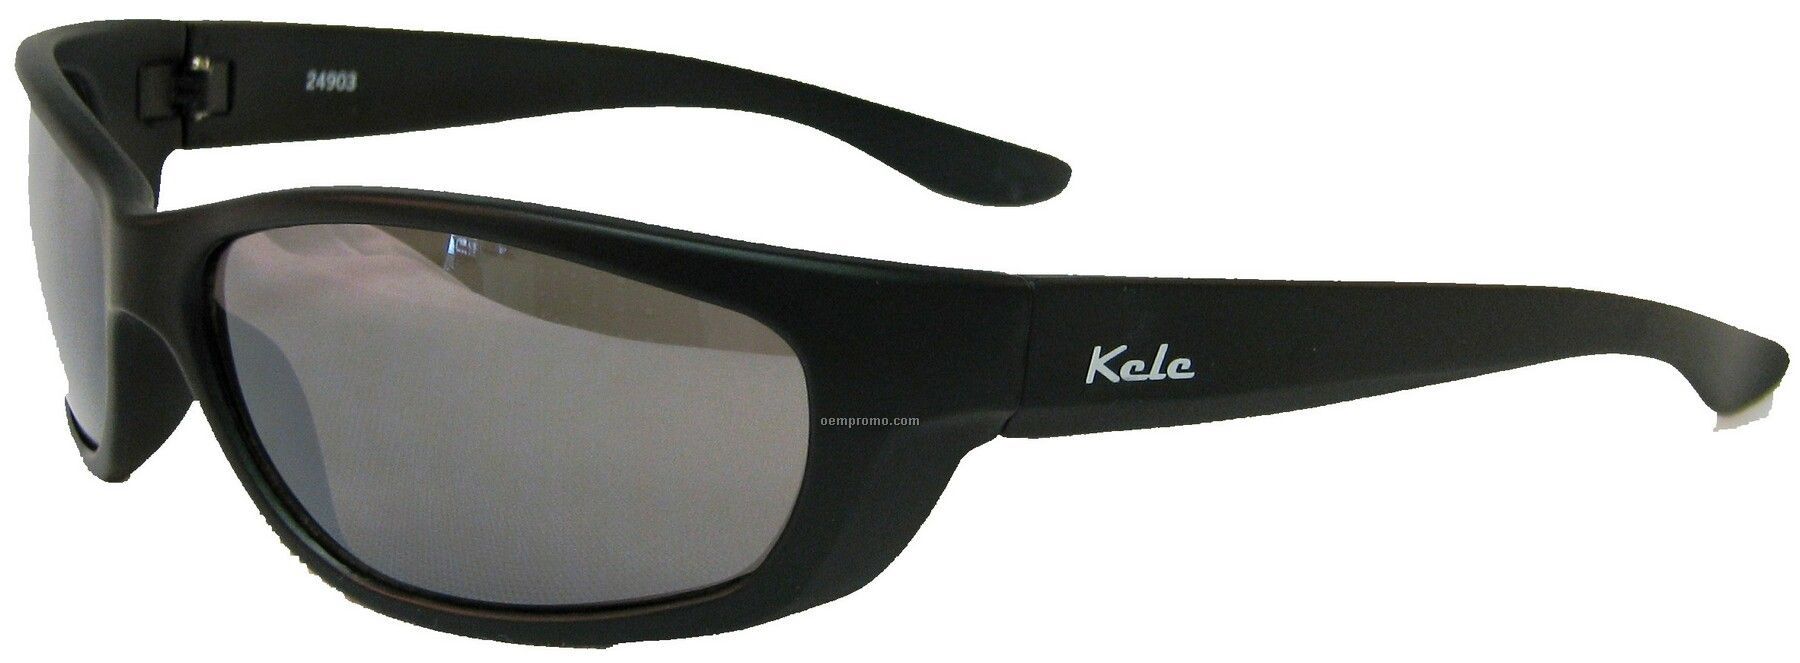 Rock Sunglasses - Gray Lens W/Matte Black Frame